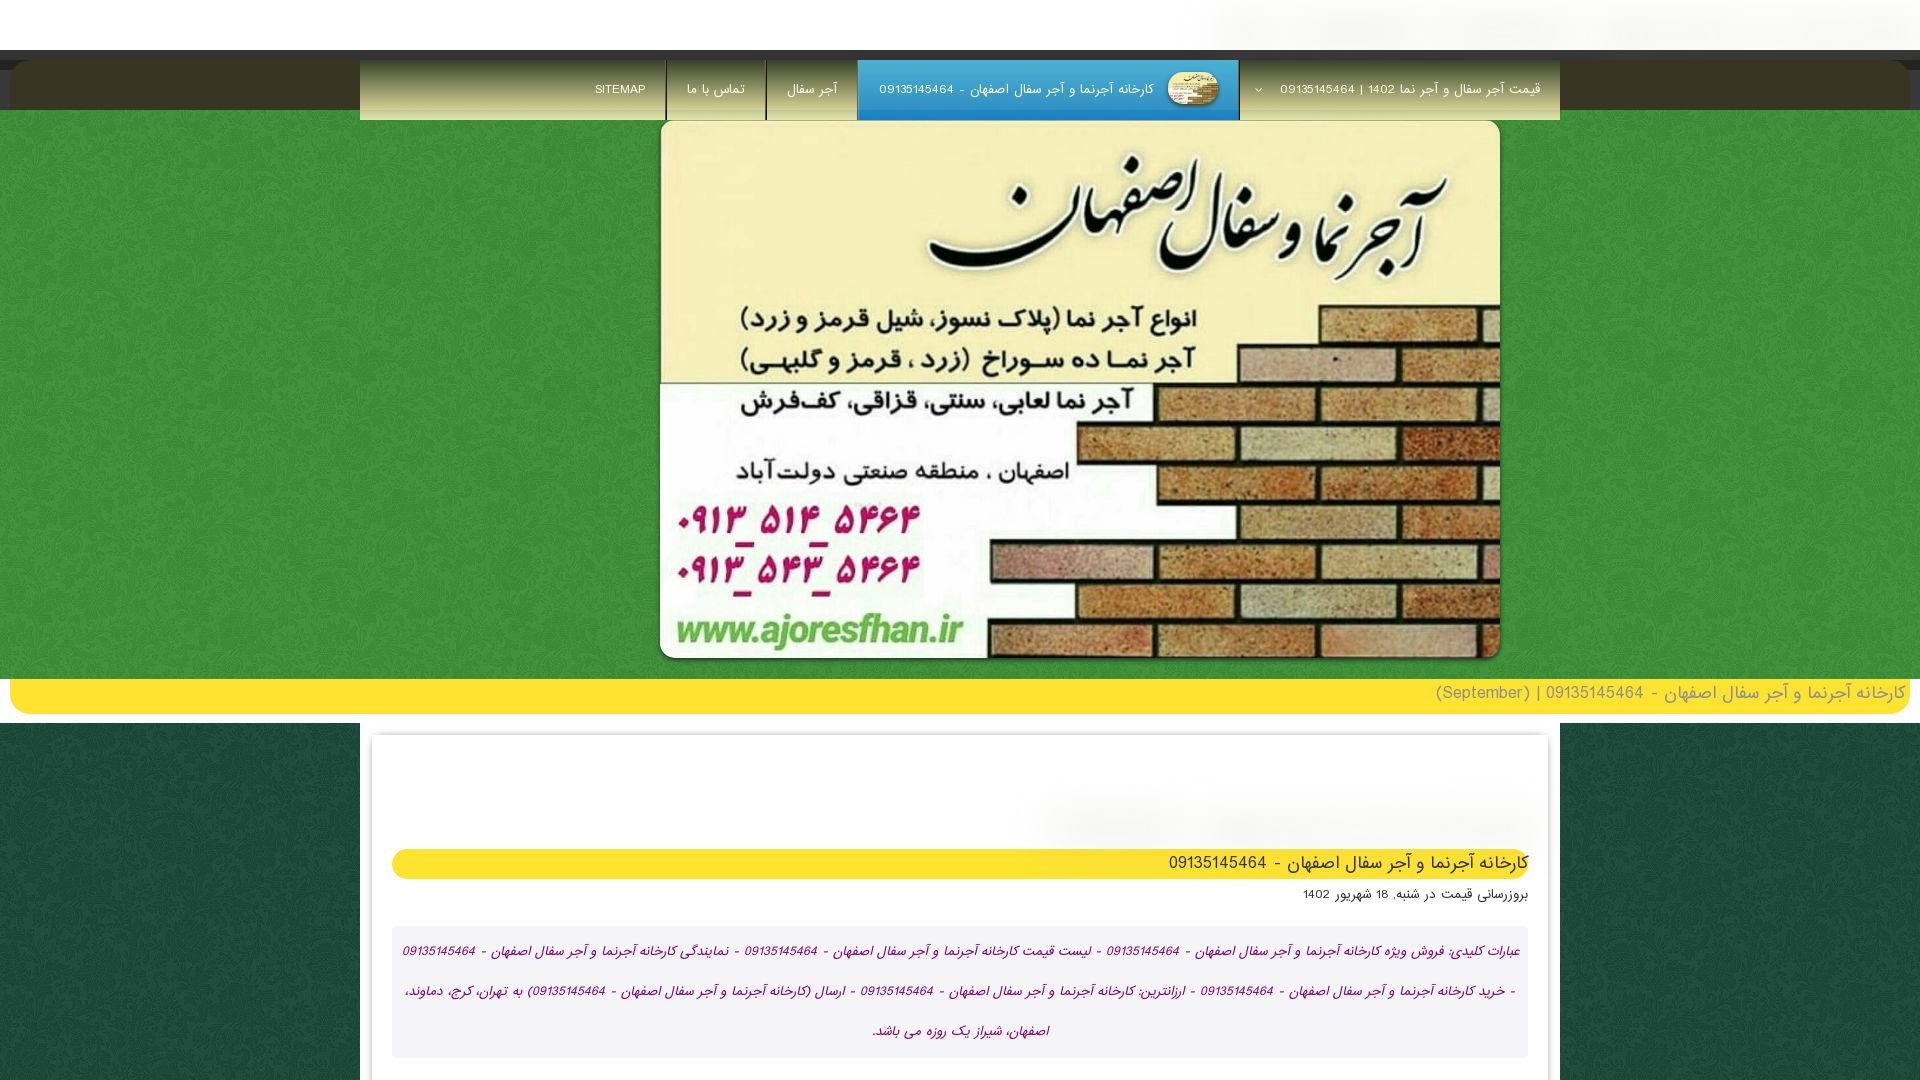 网站状态 ajornamaesfahan.ir 是  在线的